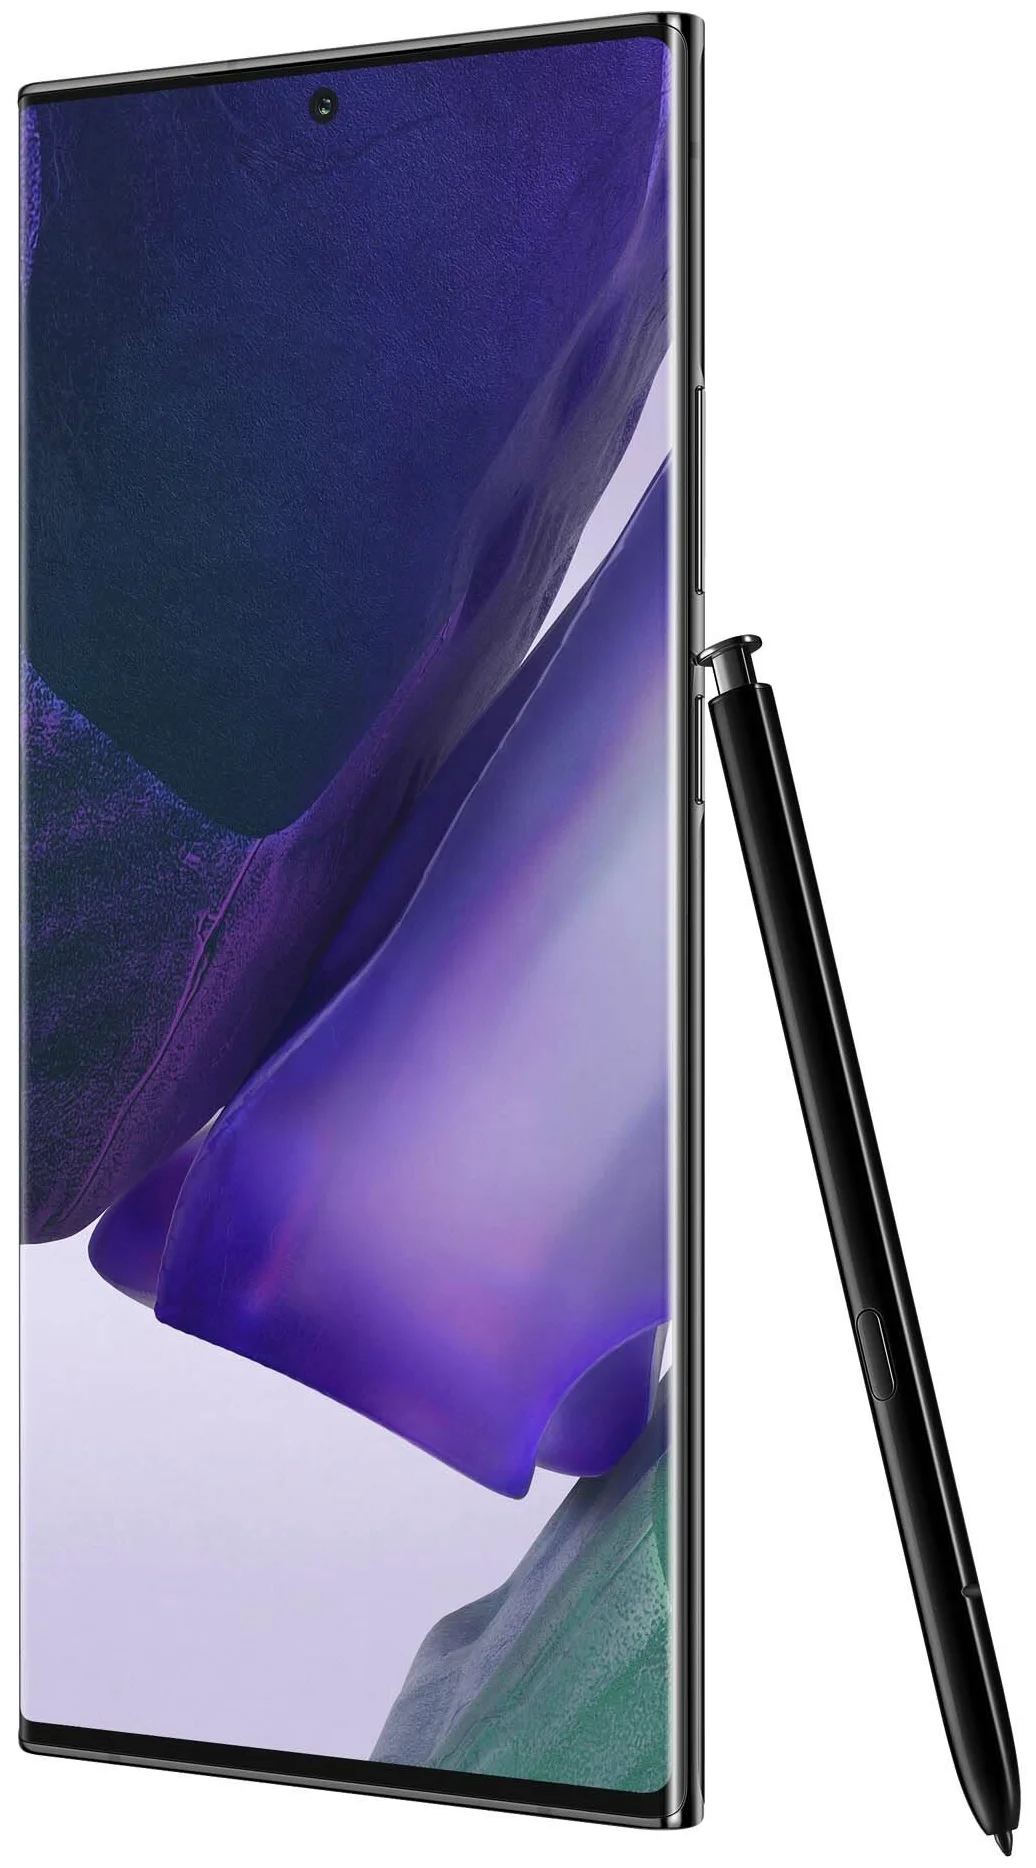 Samsung Galaxy Note 20 Ultra (SM-N985F) - беспроводные интерфейсы: NFC, Wi-Fi, Bluetooth 5.0